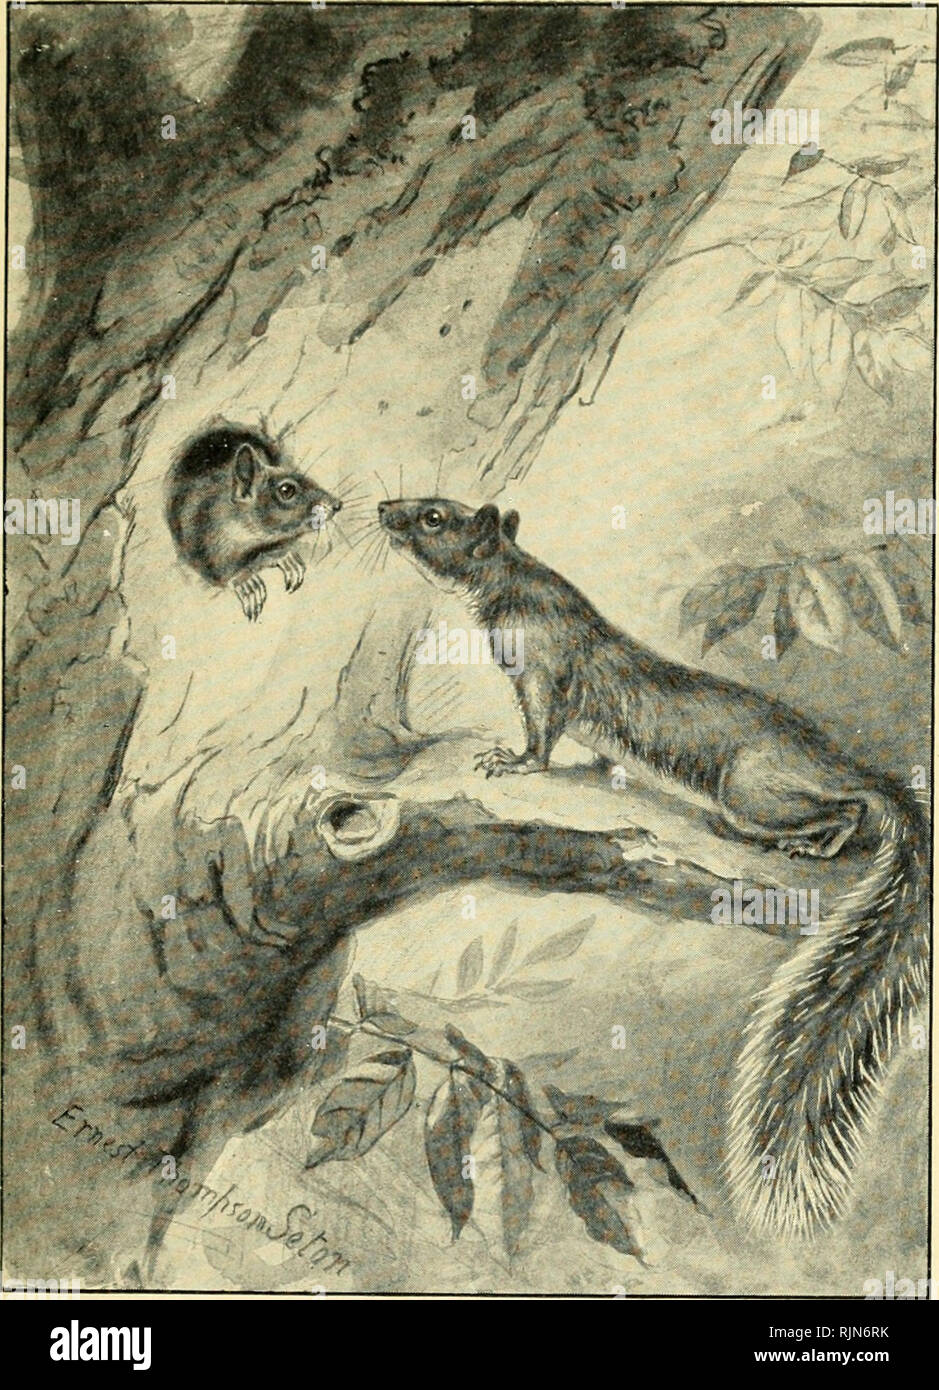 . Bannertail; die Geschichte eines grauen Eichhörnchen. Eichhörnchen. Sie TWIDDLED WHISKER GUTE NACHT. Bitte beachten Sie, dass diese Bilder sind von der gescannten Seite Bilder, die digital für die Lesbarkeit verbessert haben mögen - Färbung und Aussehen dieser Abbildungen können nicht perfekt dem Original ähneln. extrahiert. Seton, Ernest Thompson, 1860-1946. New York C. Scribner Stockfoto